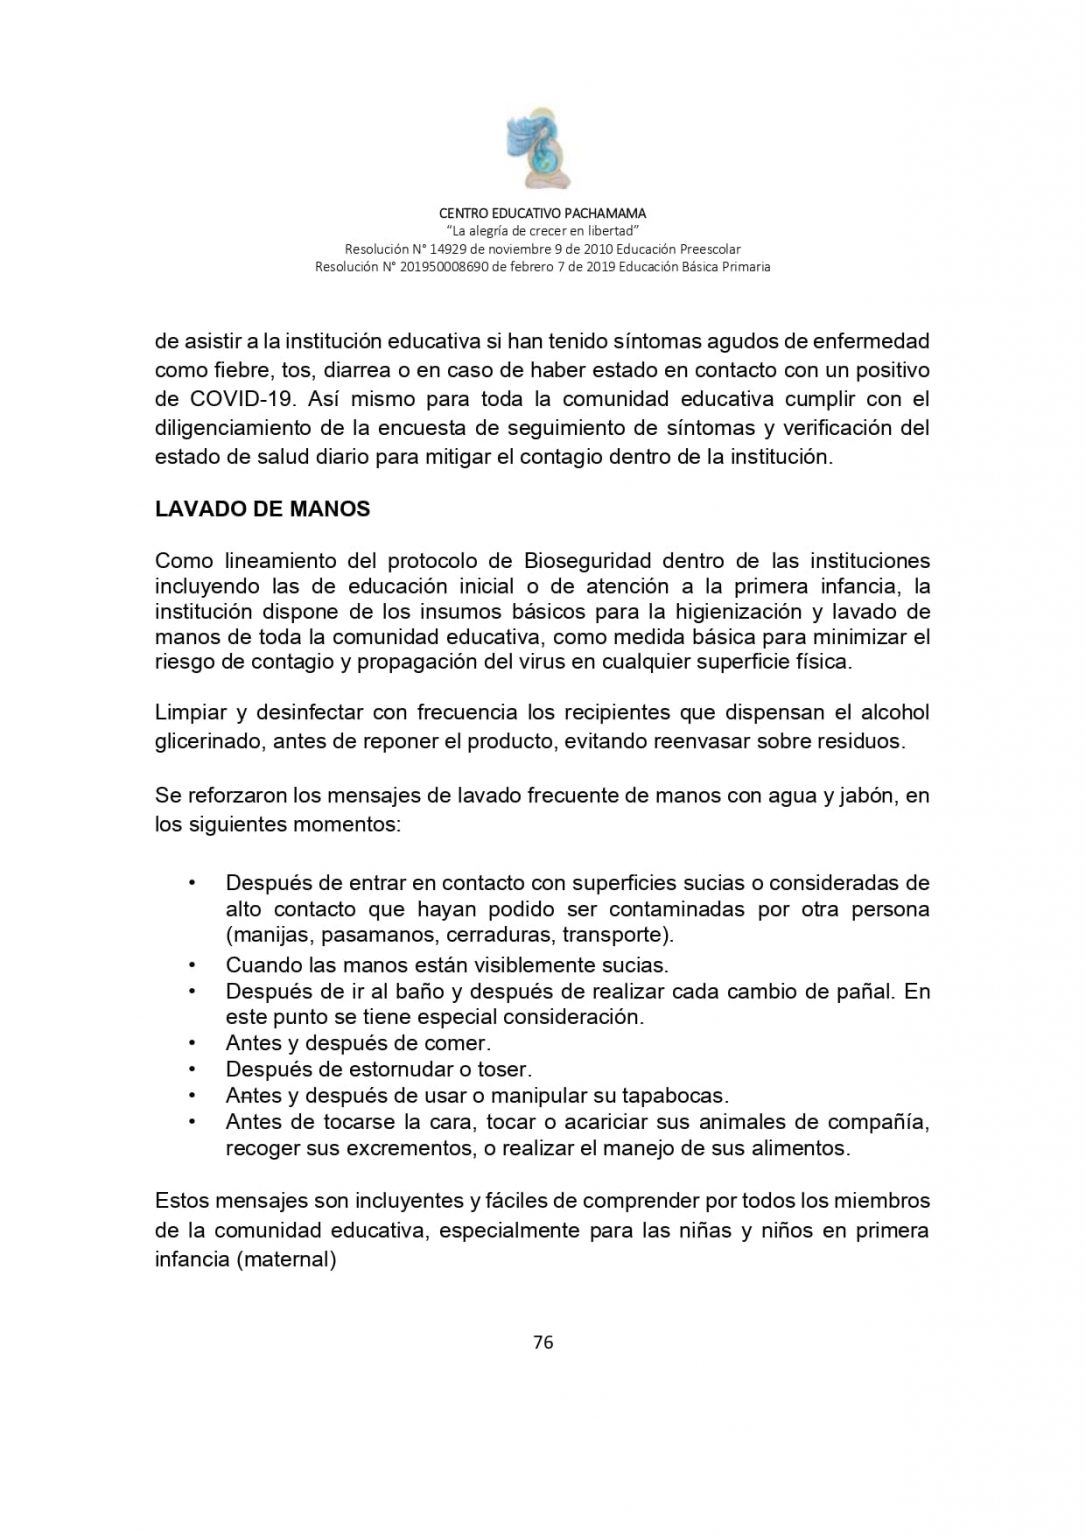 PROTOCOLO DE BIOSEGURIDAD PACHAMAMA Última Versión (3)-convertido_page-0076